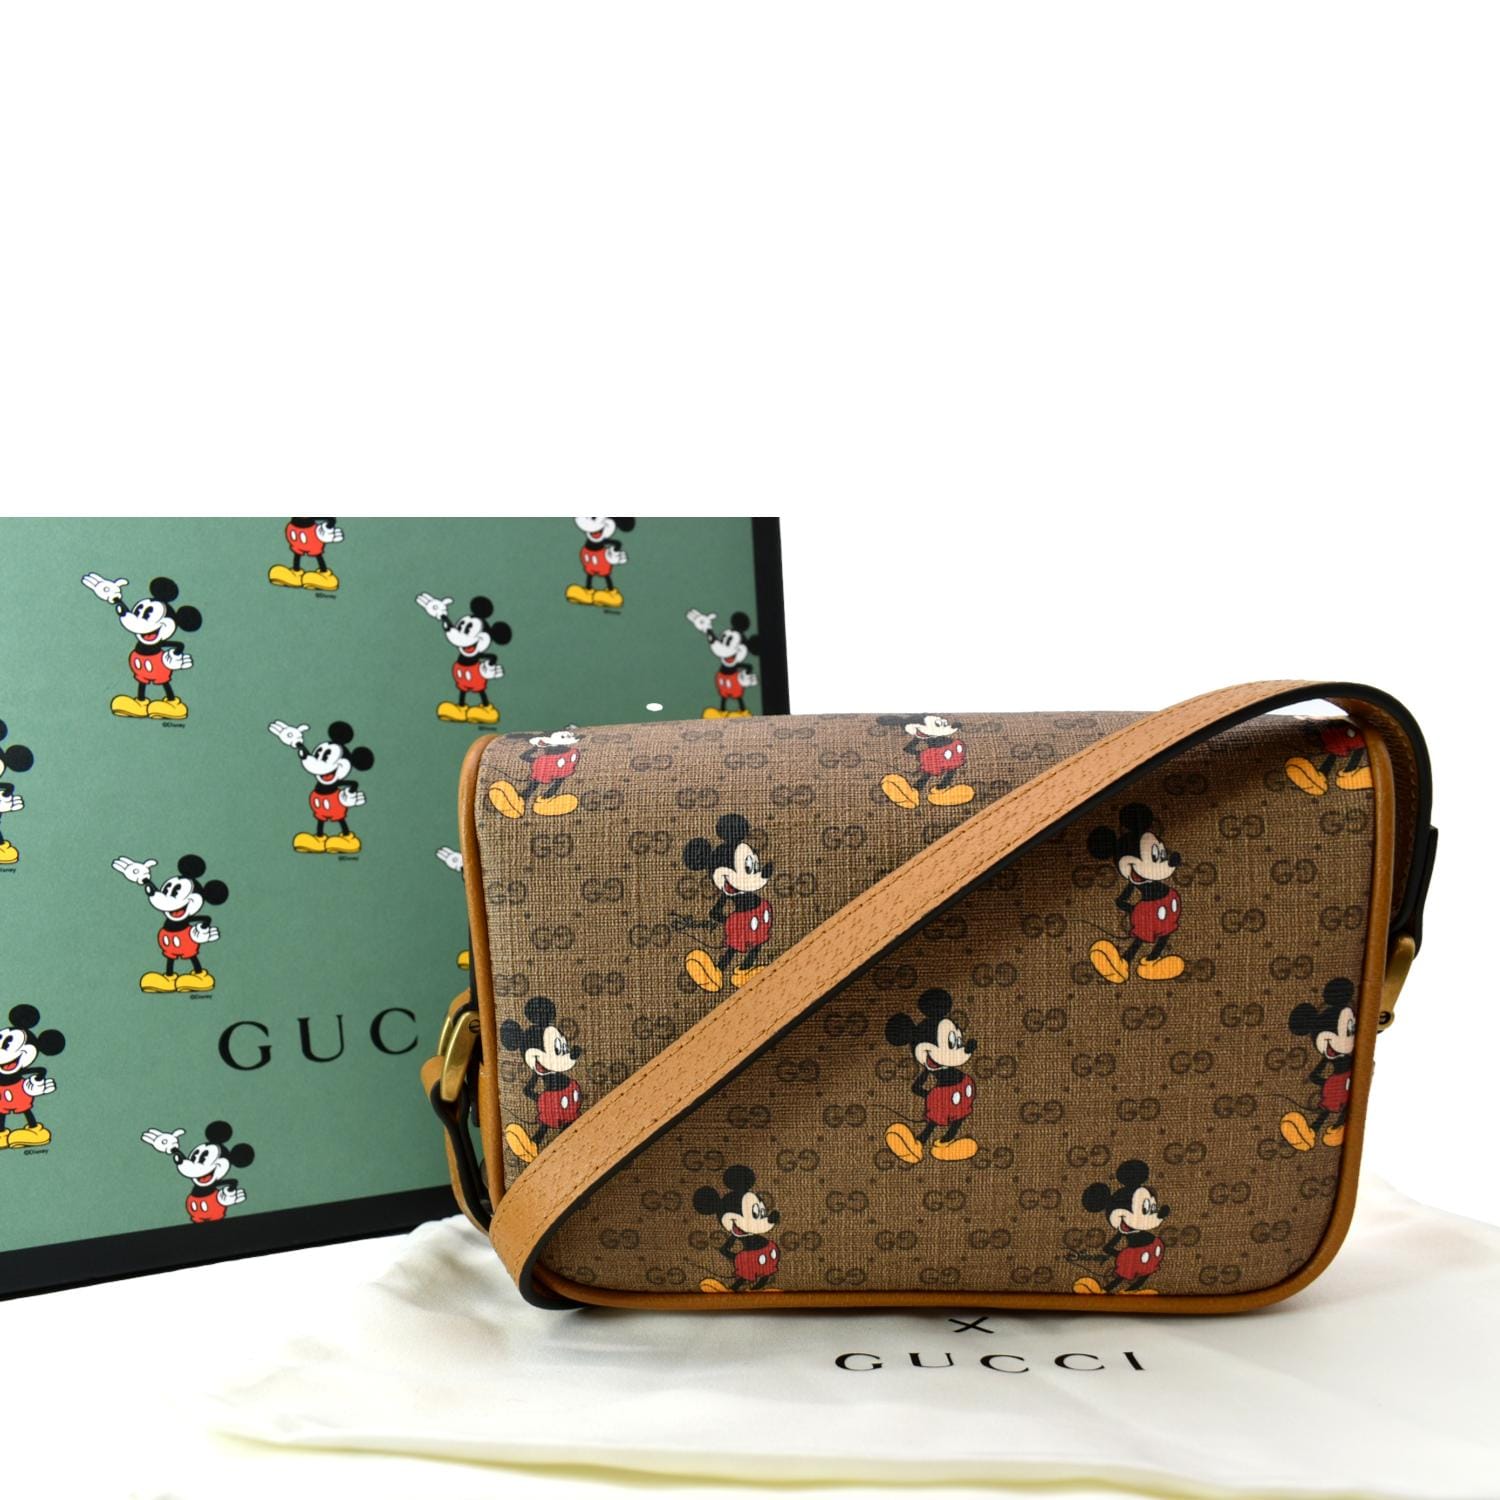 Louis Vuitton Mickey Mouse Handbags